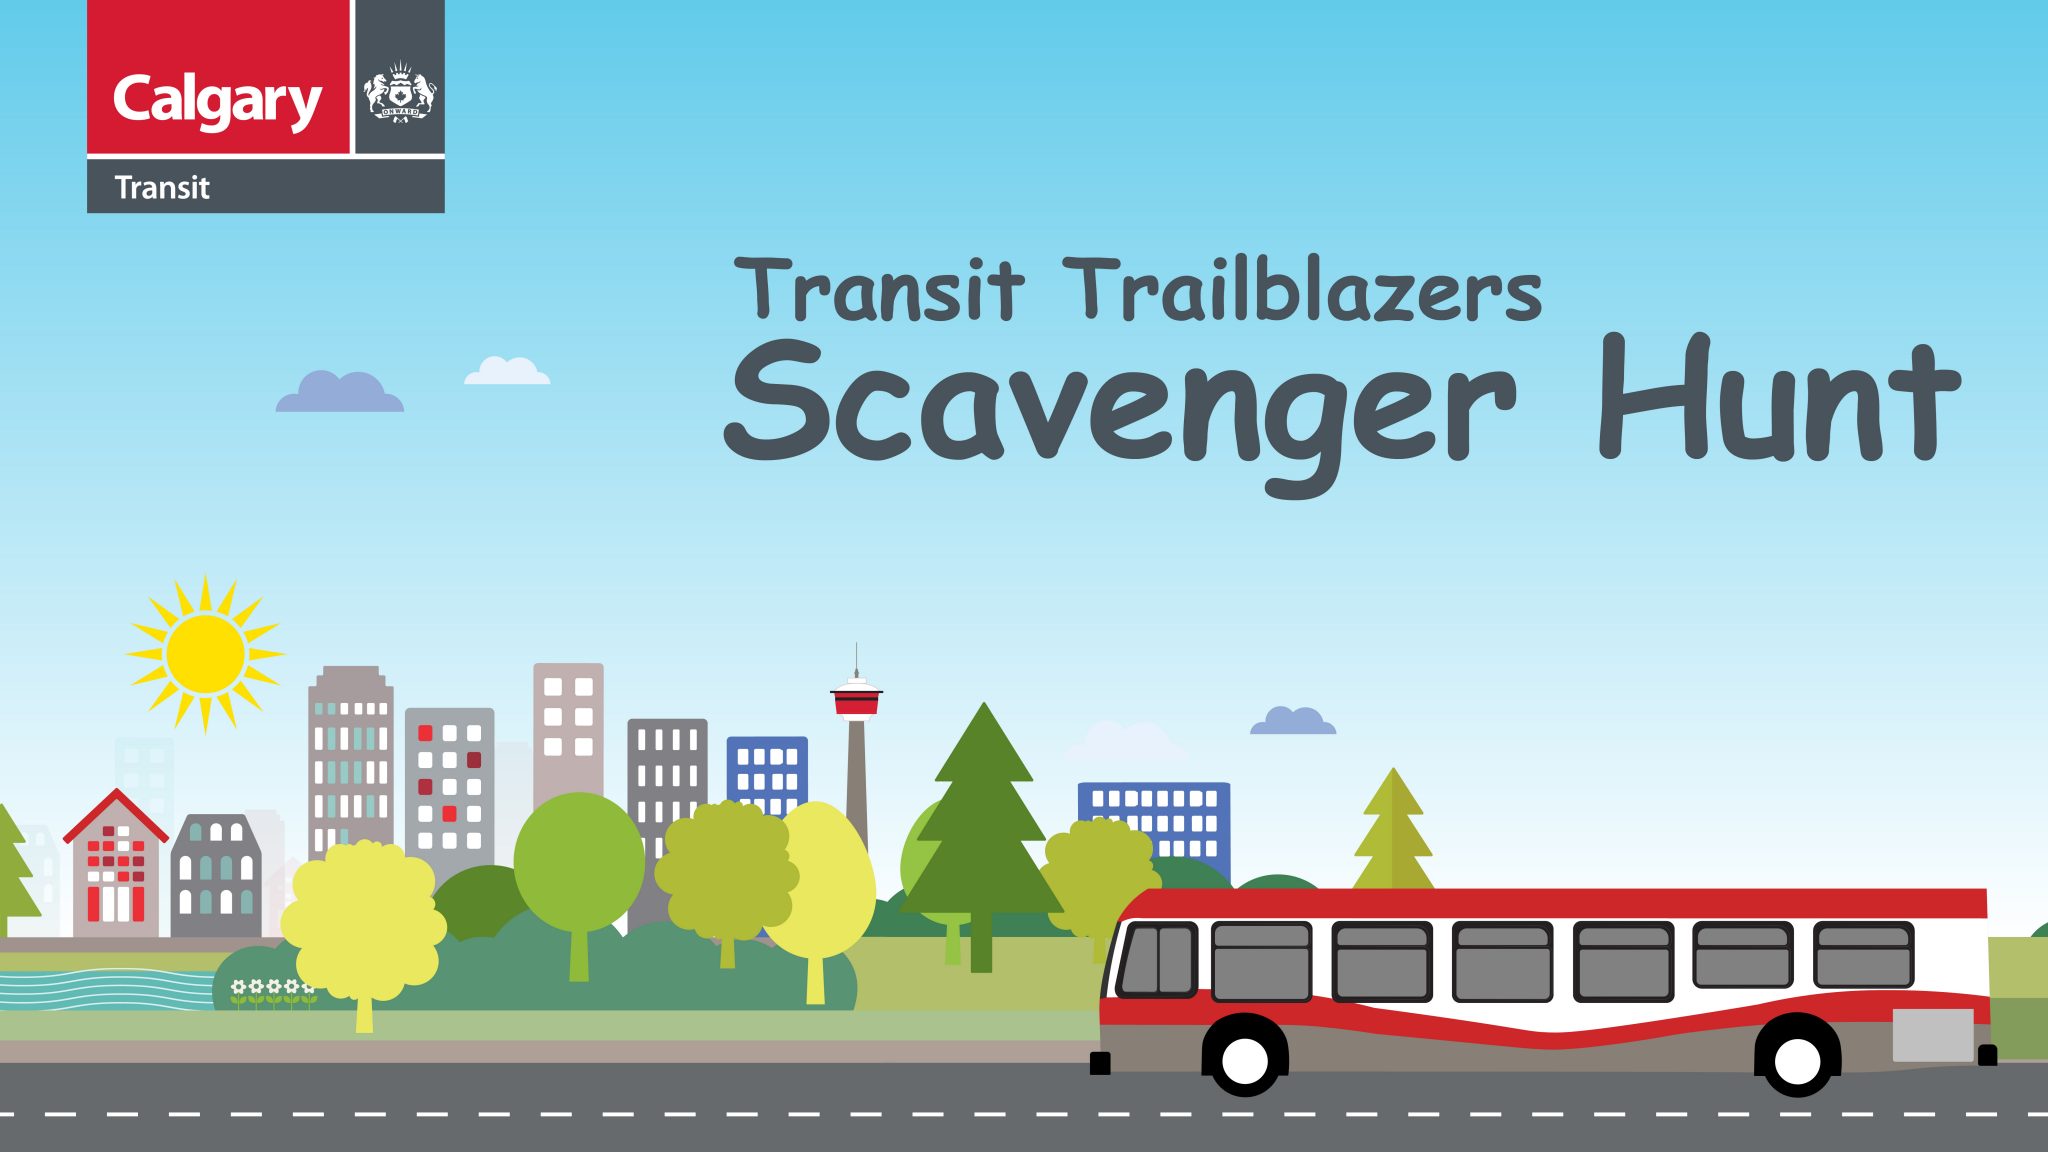 Transit Trailblazers